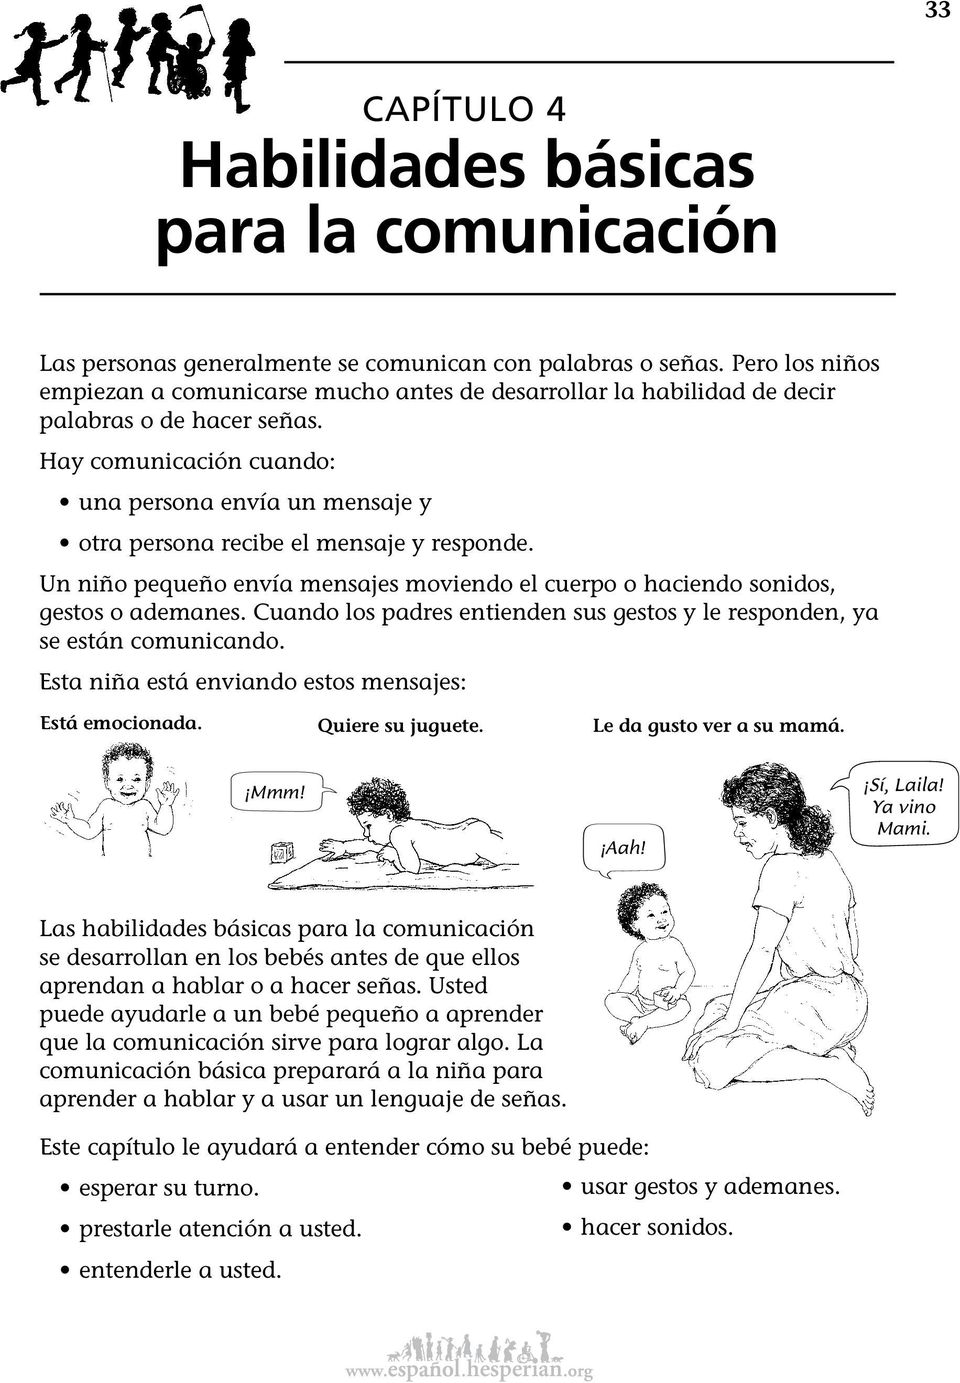 Hay comunicación cuando: una persona envía un mensaje y otra persona recibe el mensaje y responde. Un niño pequeño envía mensajes moviendo el cuerpo o haciendo sonidos, gestos o ademanes.